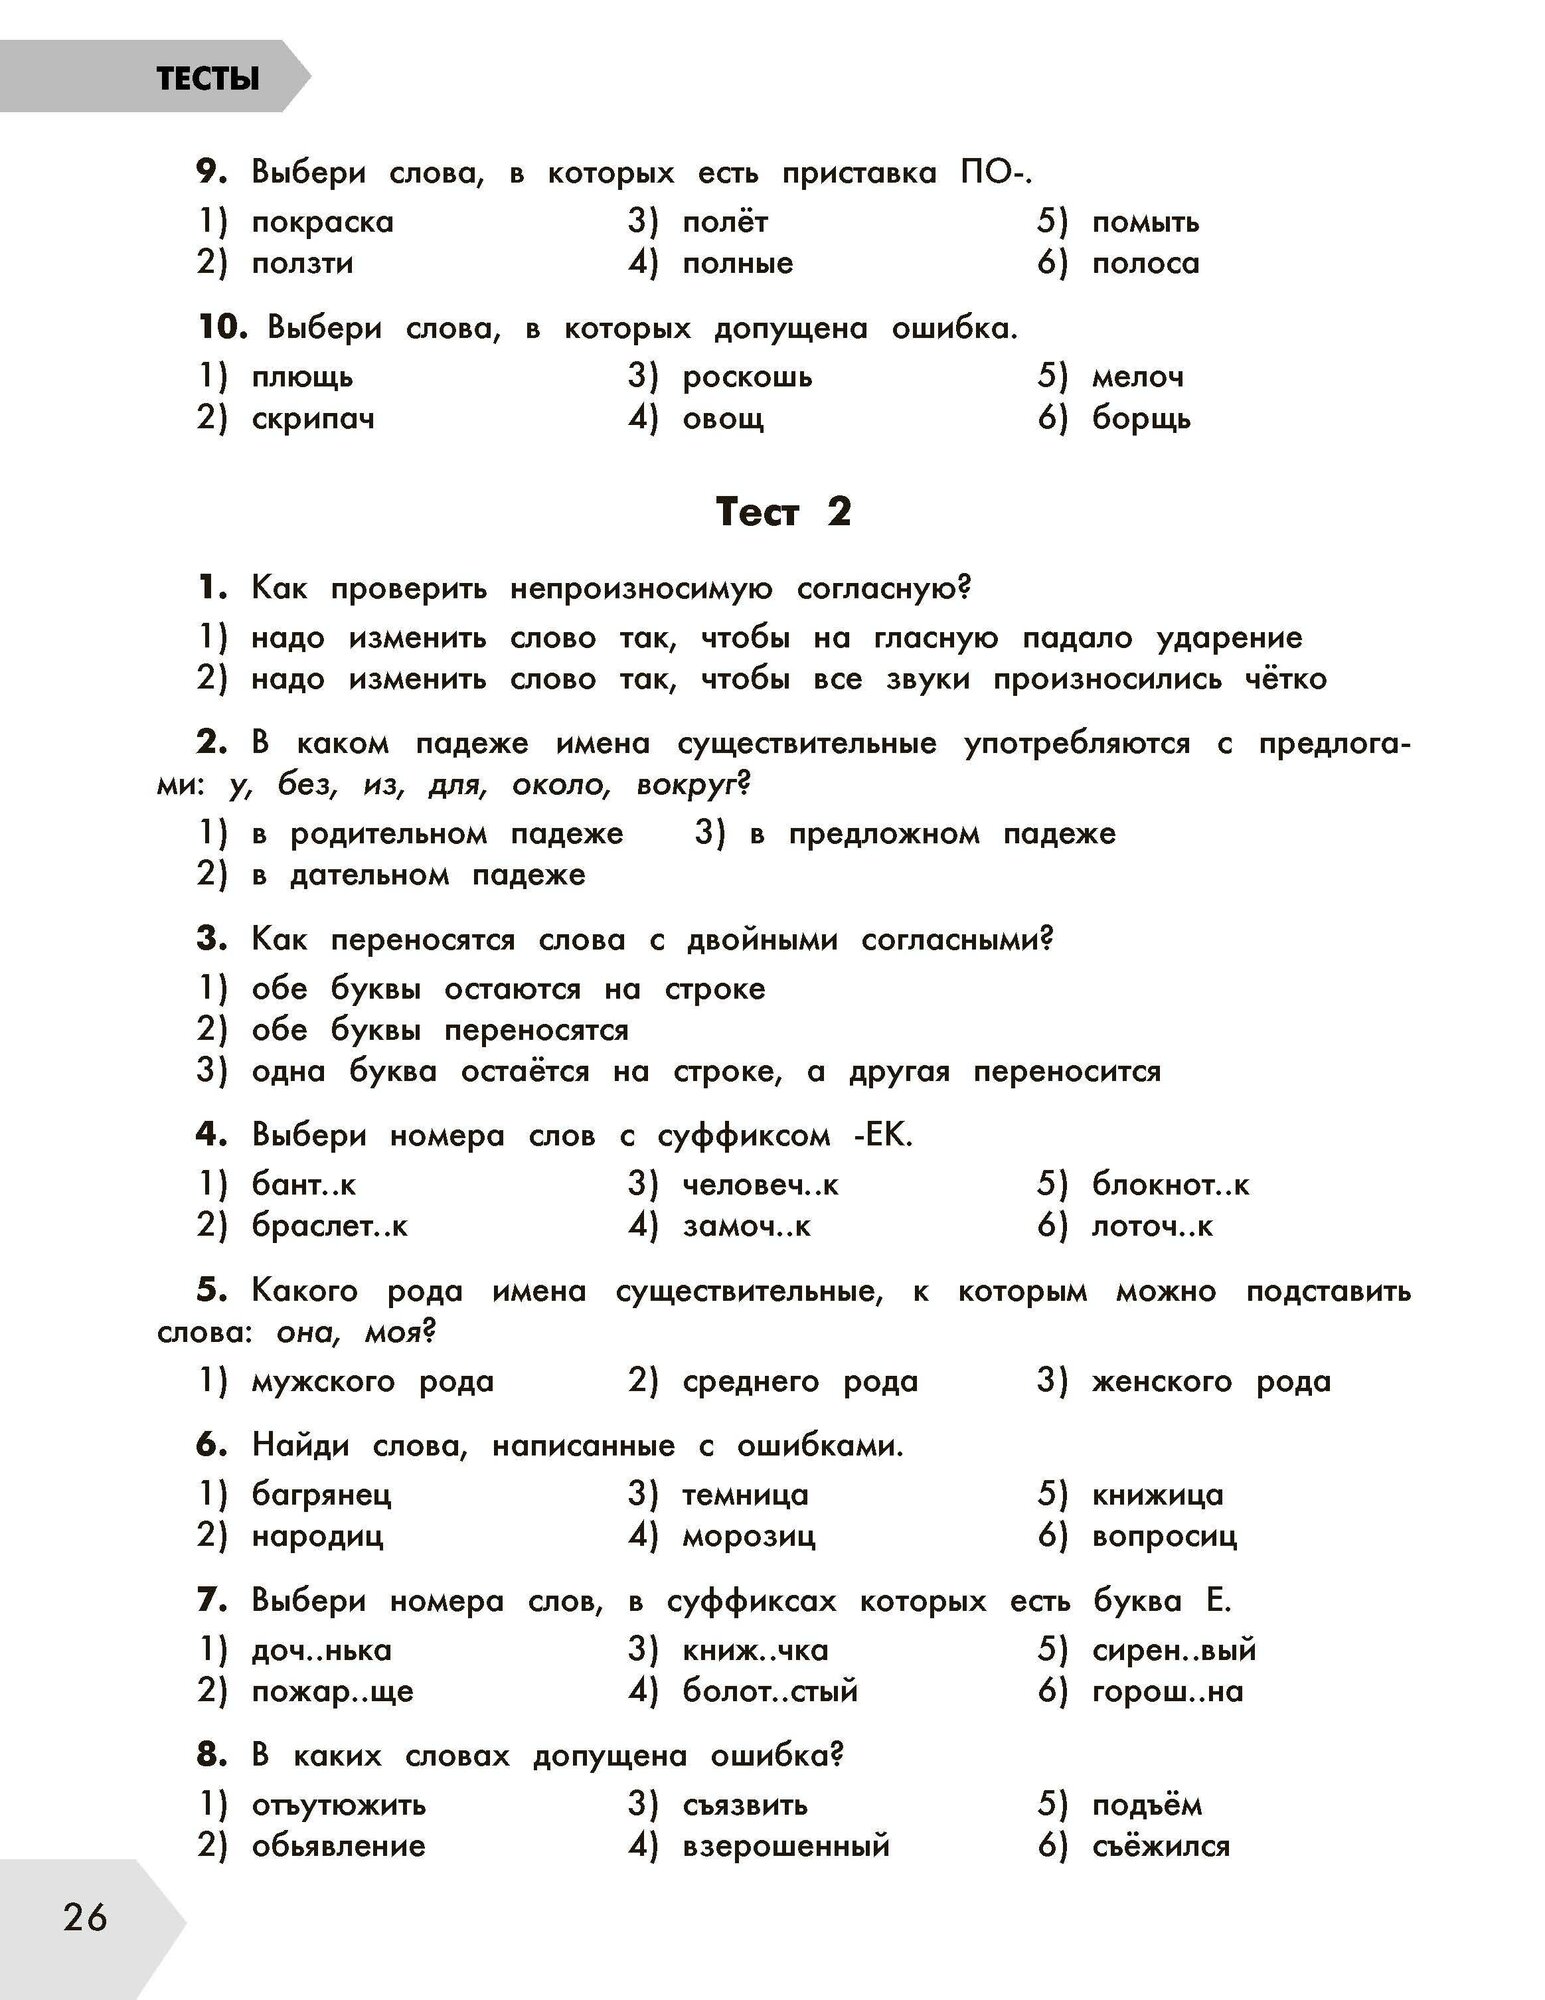 Русский язык в схемах и таблицах. Все темы школьного курса 4 класса с тестами. - фото №19